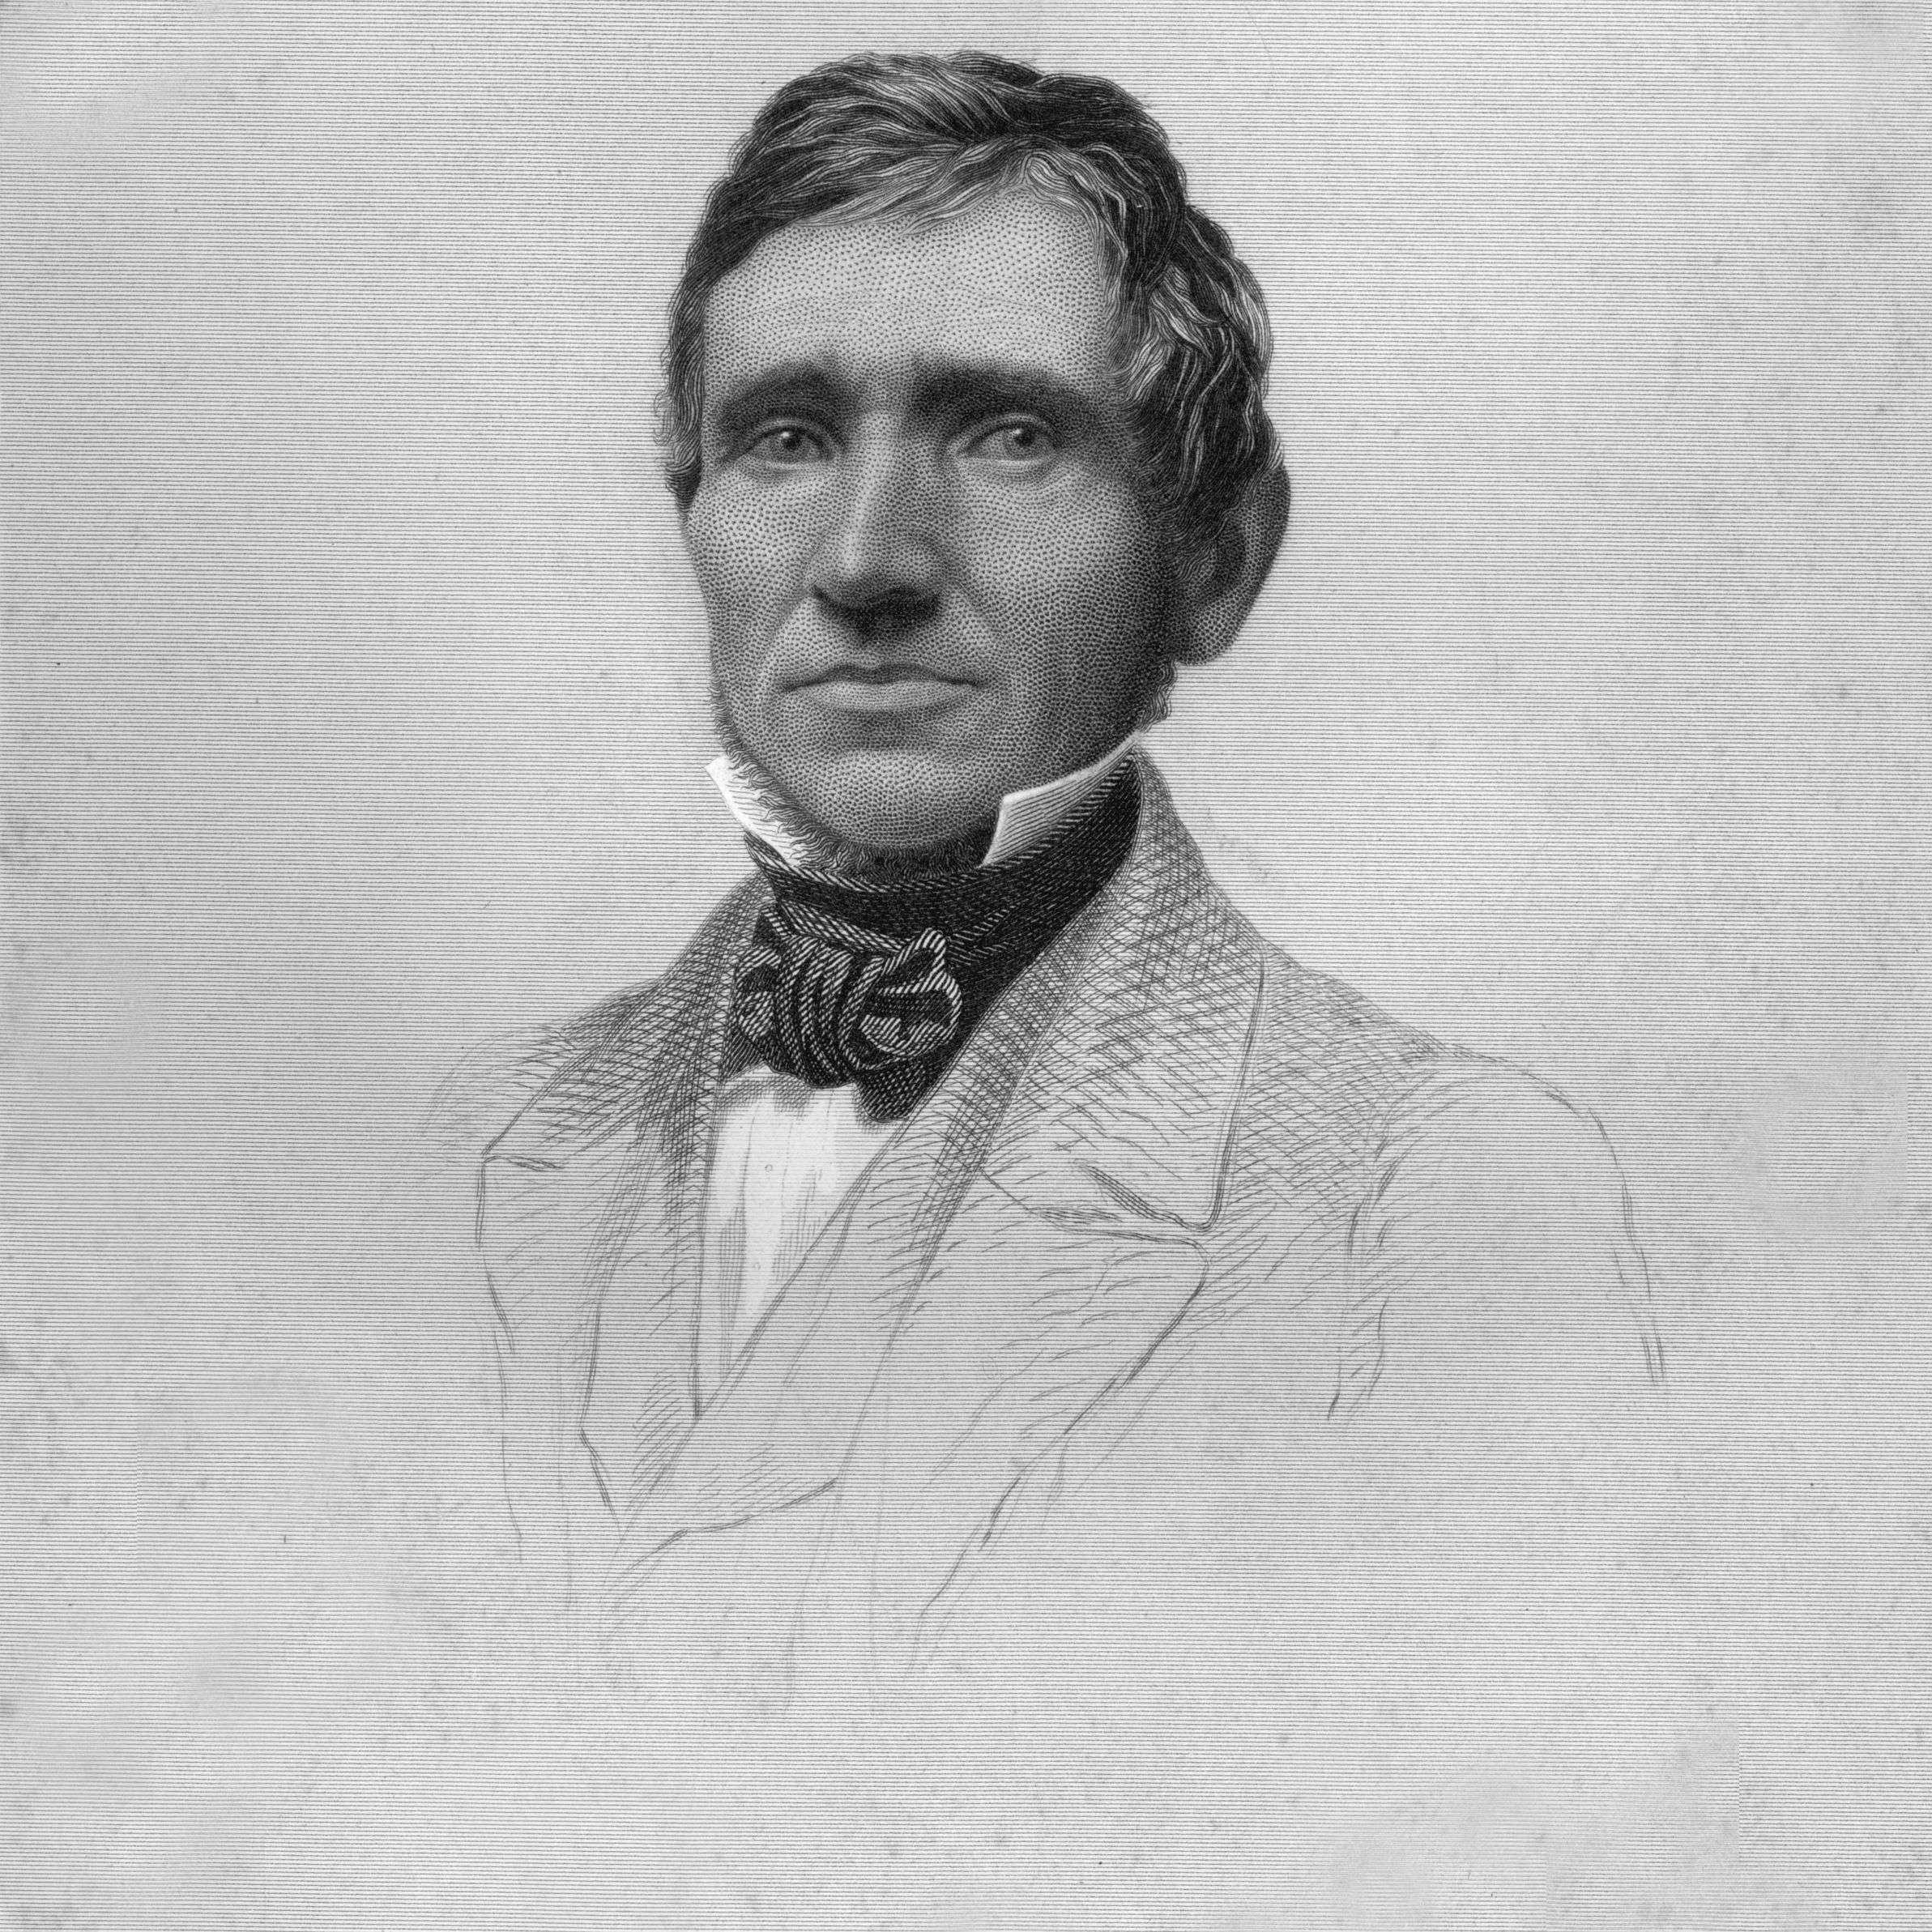 khoảng năm 1845: Chân dung nhà phát minh người Mỹ Charles Goodyear (1800 - 1860).